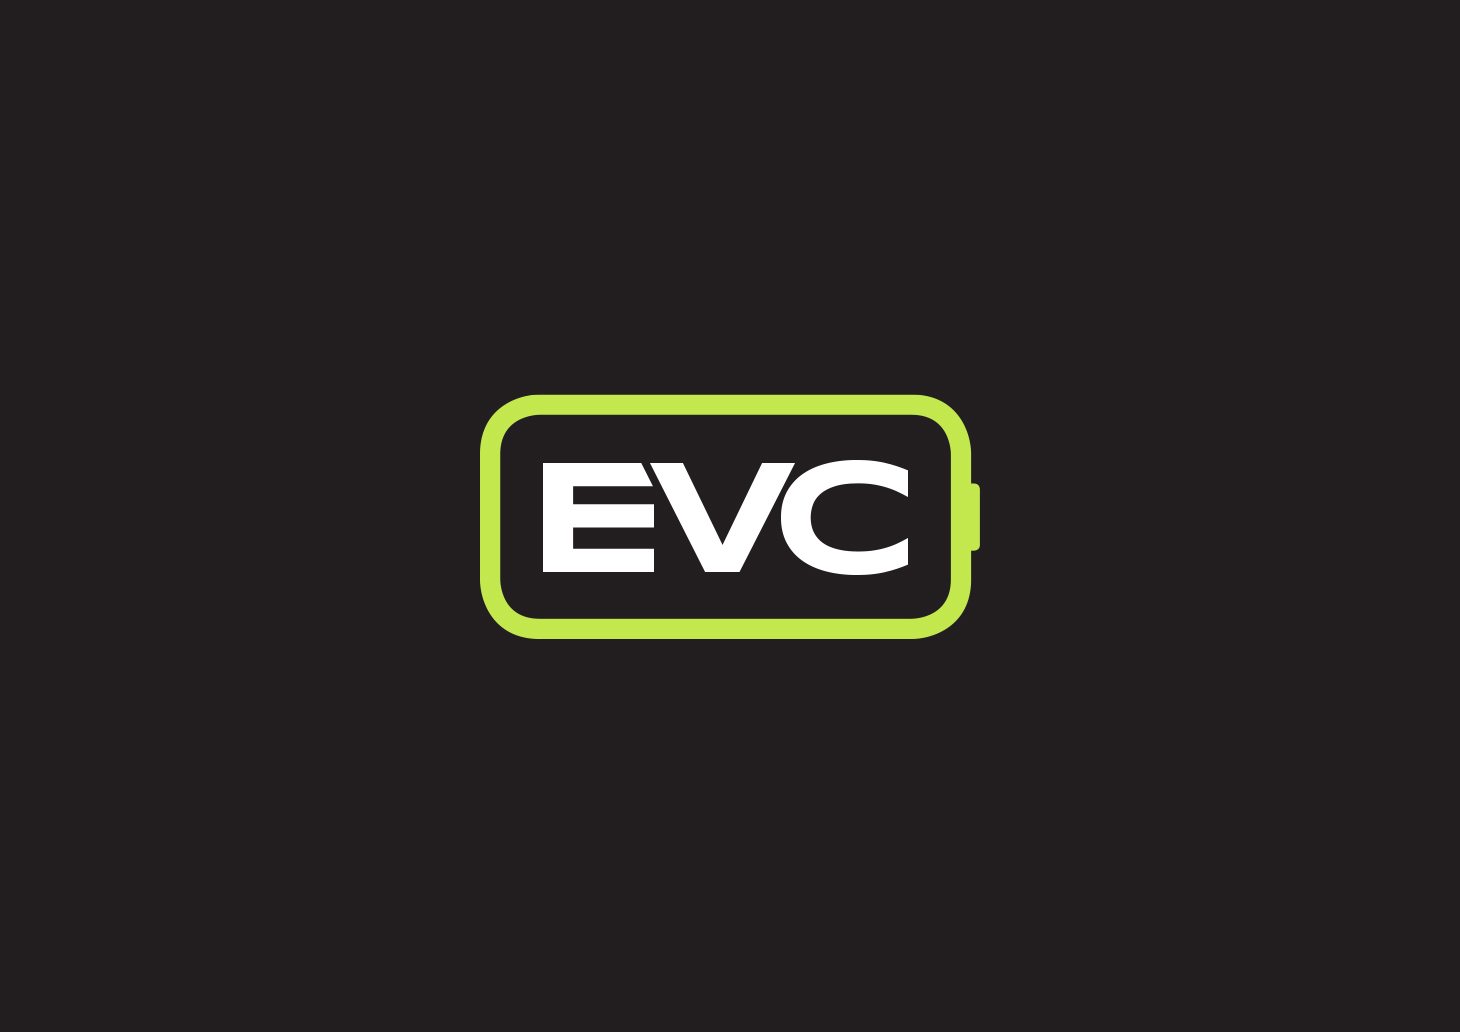 brand-identity-evc-example-2